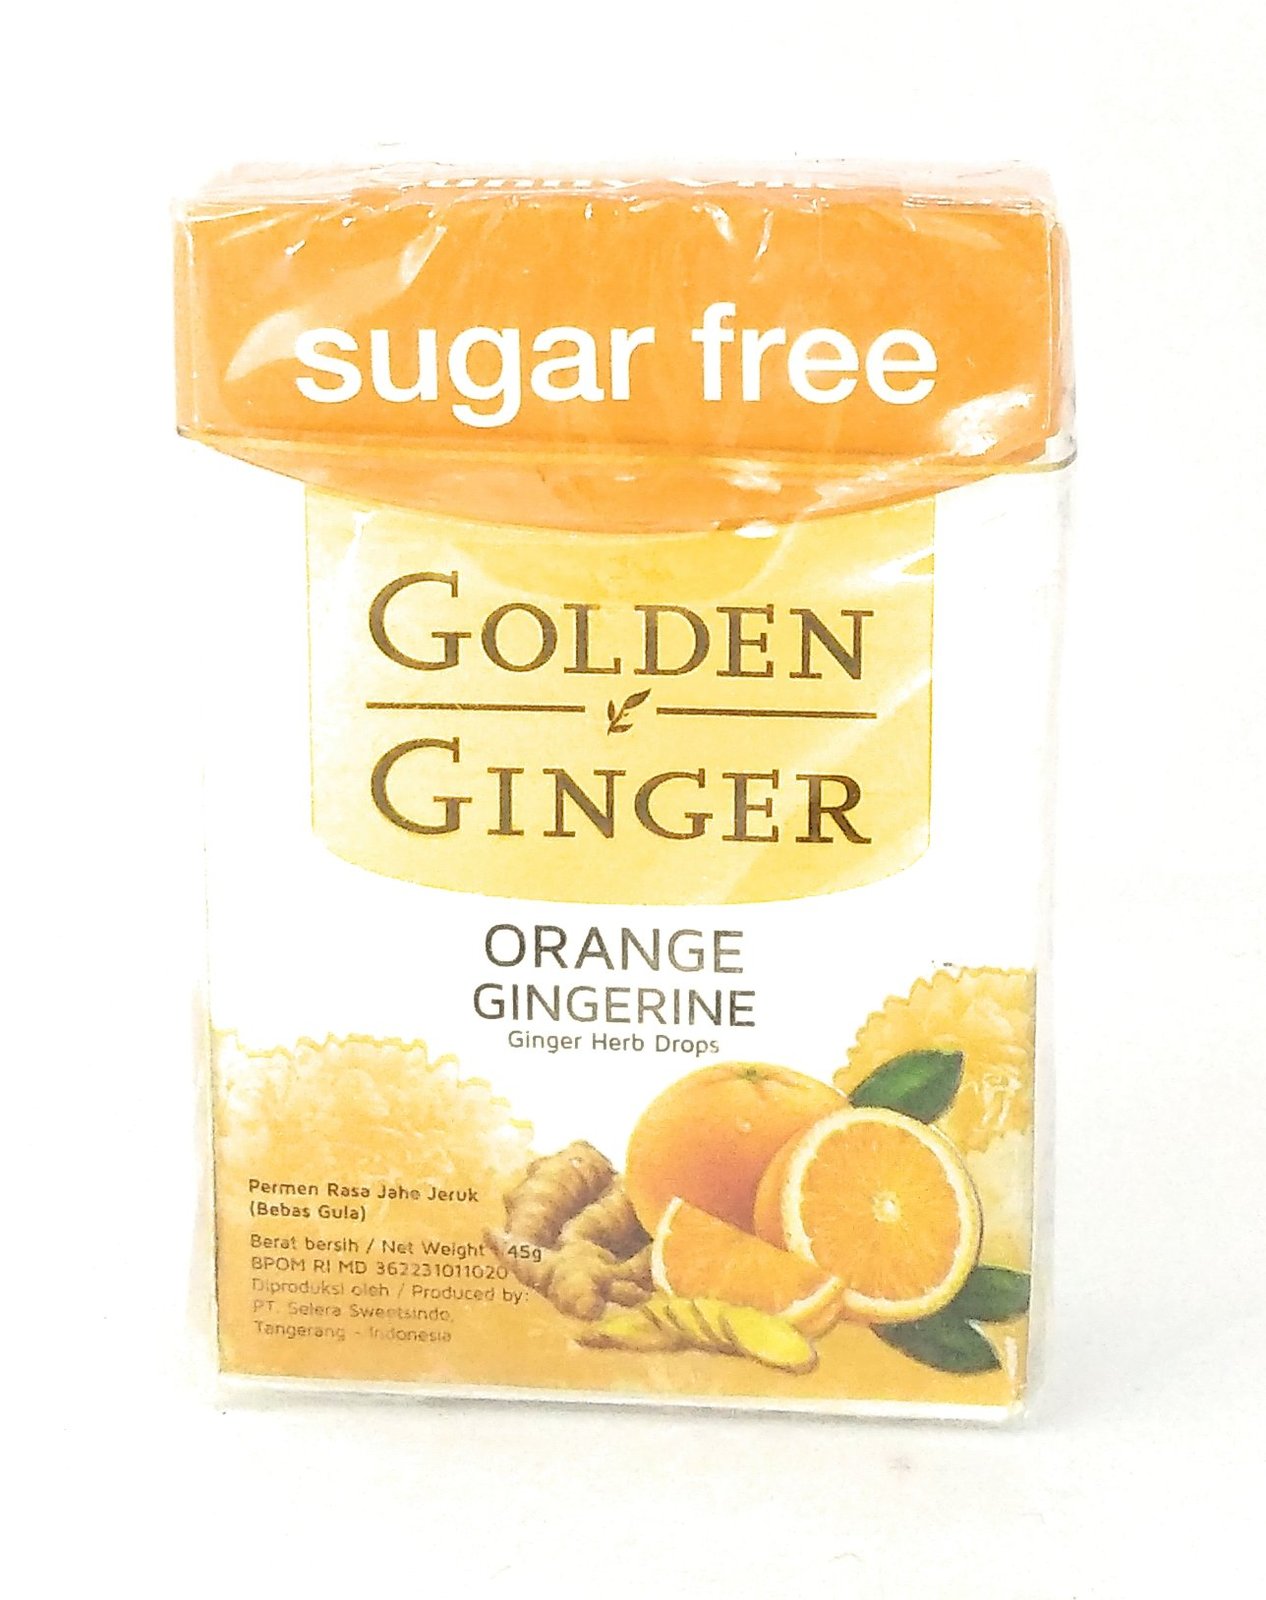 Primary image for Golden Ginger Herb Drops Orange Gingerine (sugar free), 45 Gram (Pack of 4)